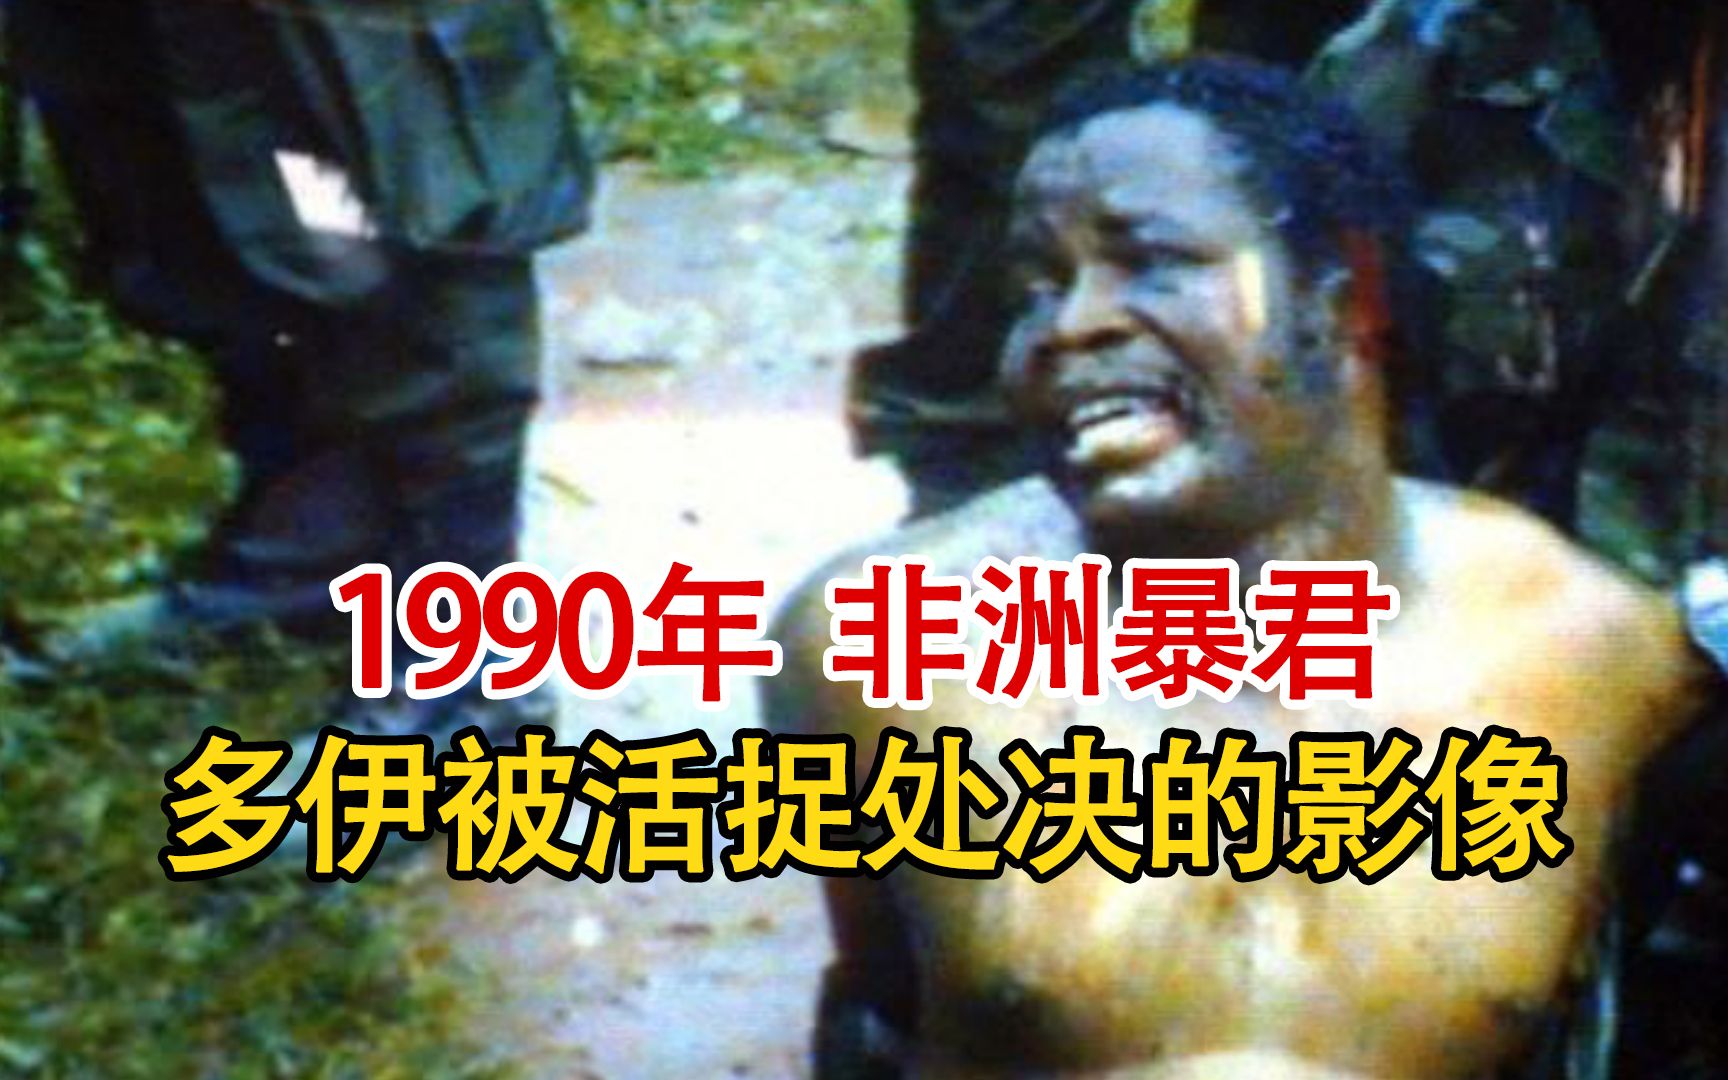 实录1990年非洲暴君被活捉时影像，生前受到宫刑，死后被分食！